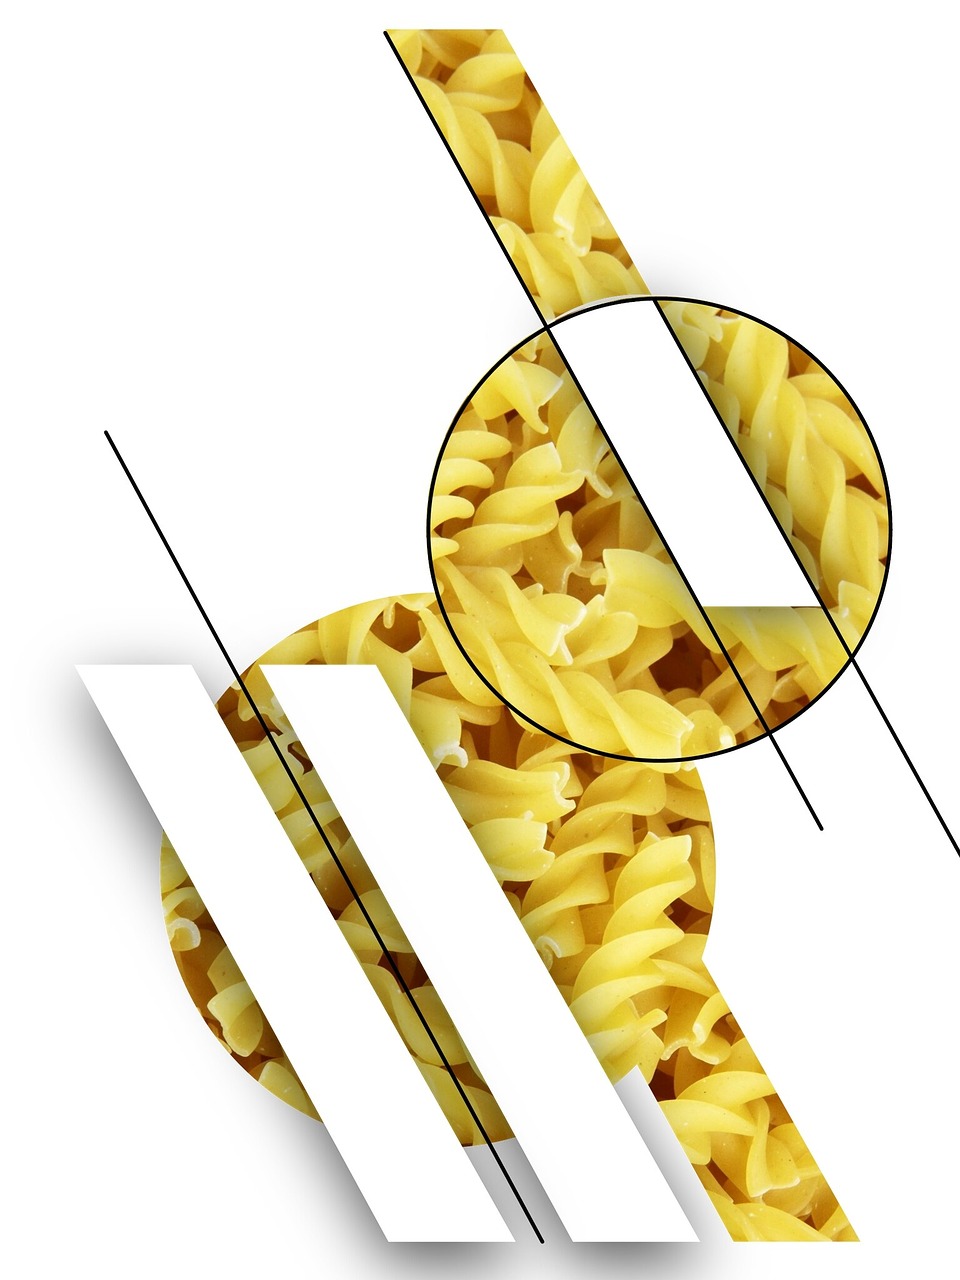 noodles spirals pasta free photo